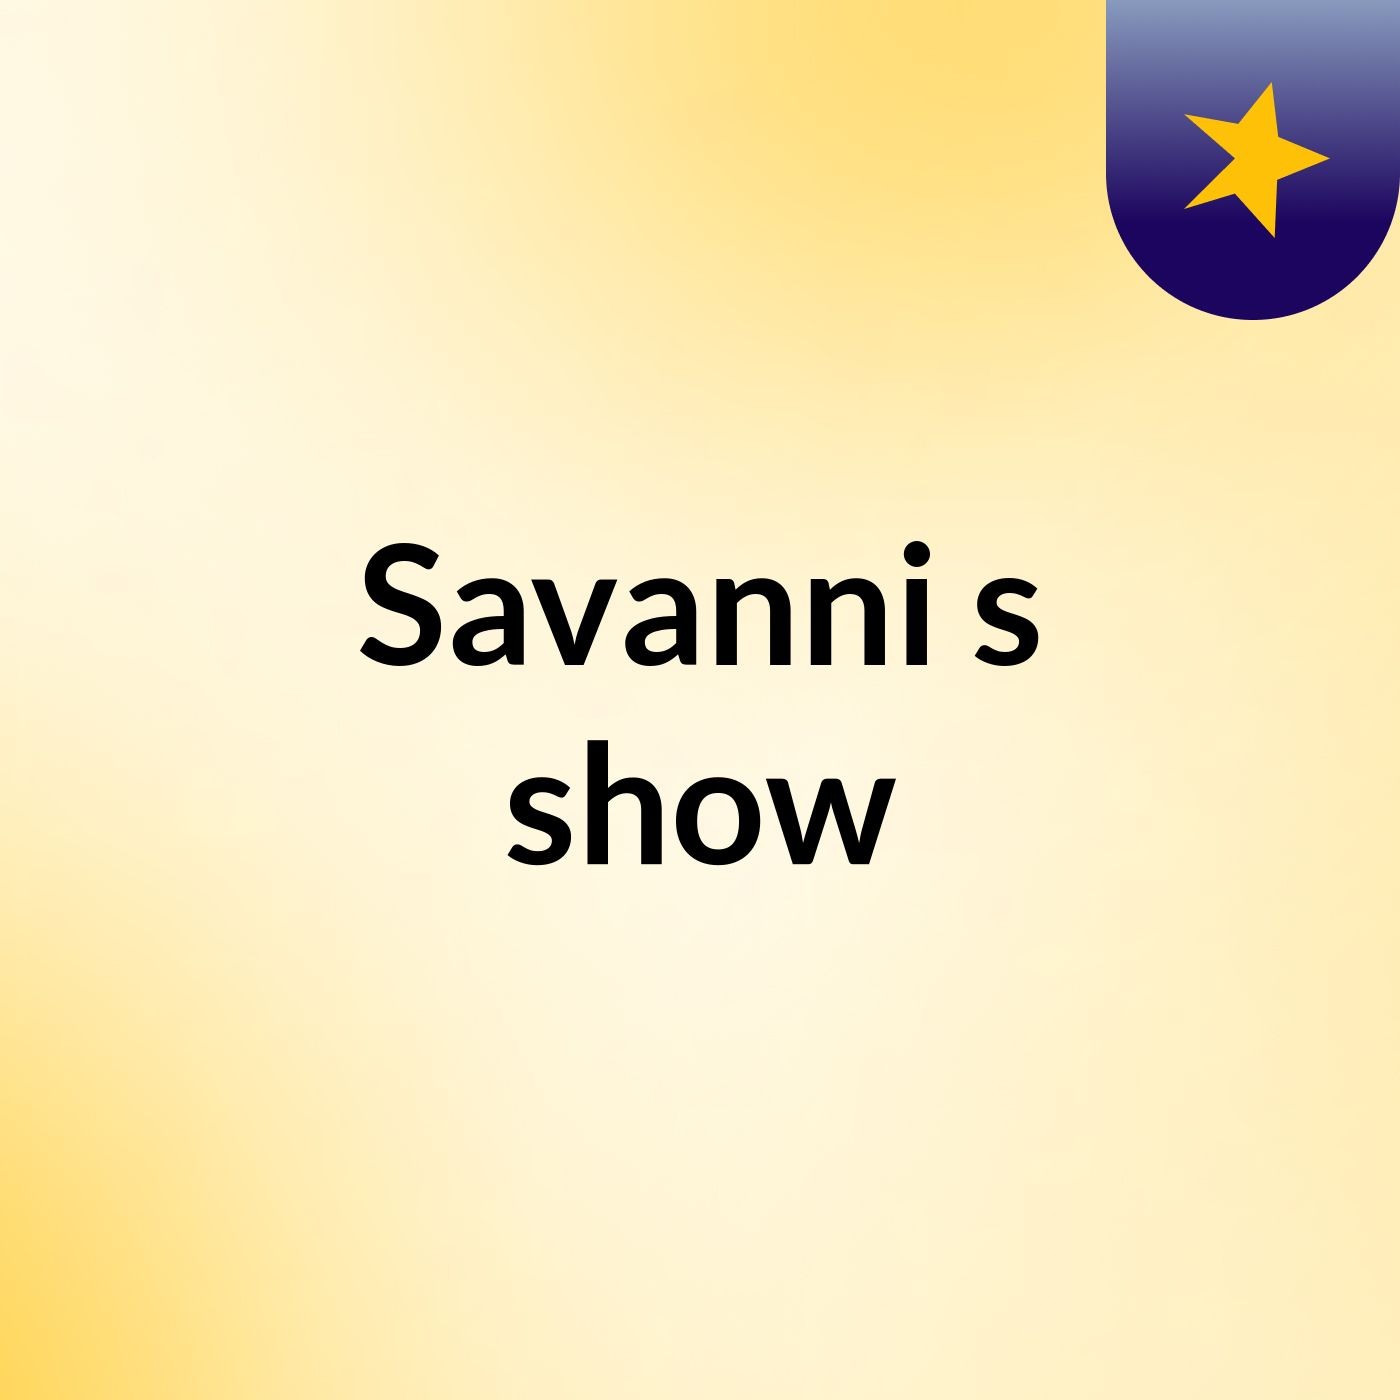 Savanni's show